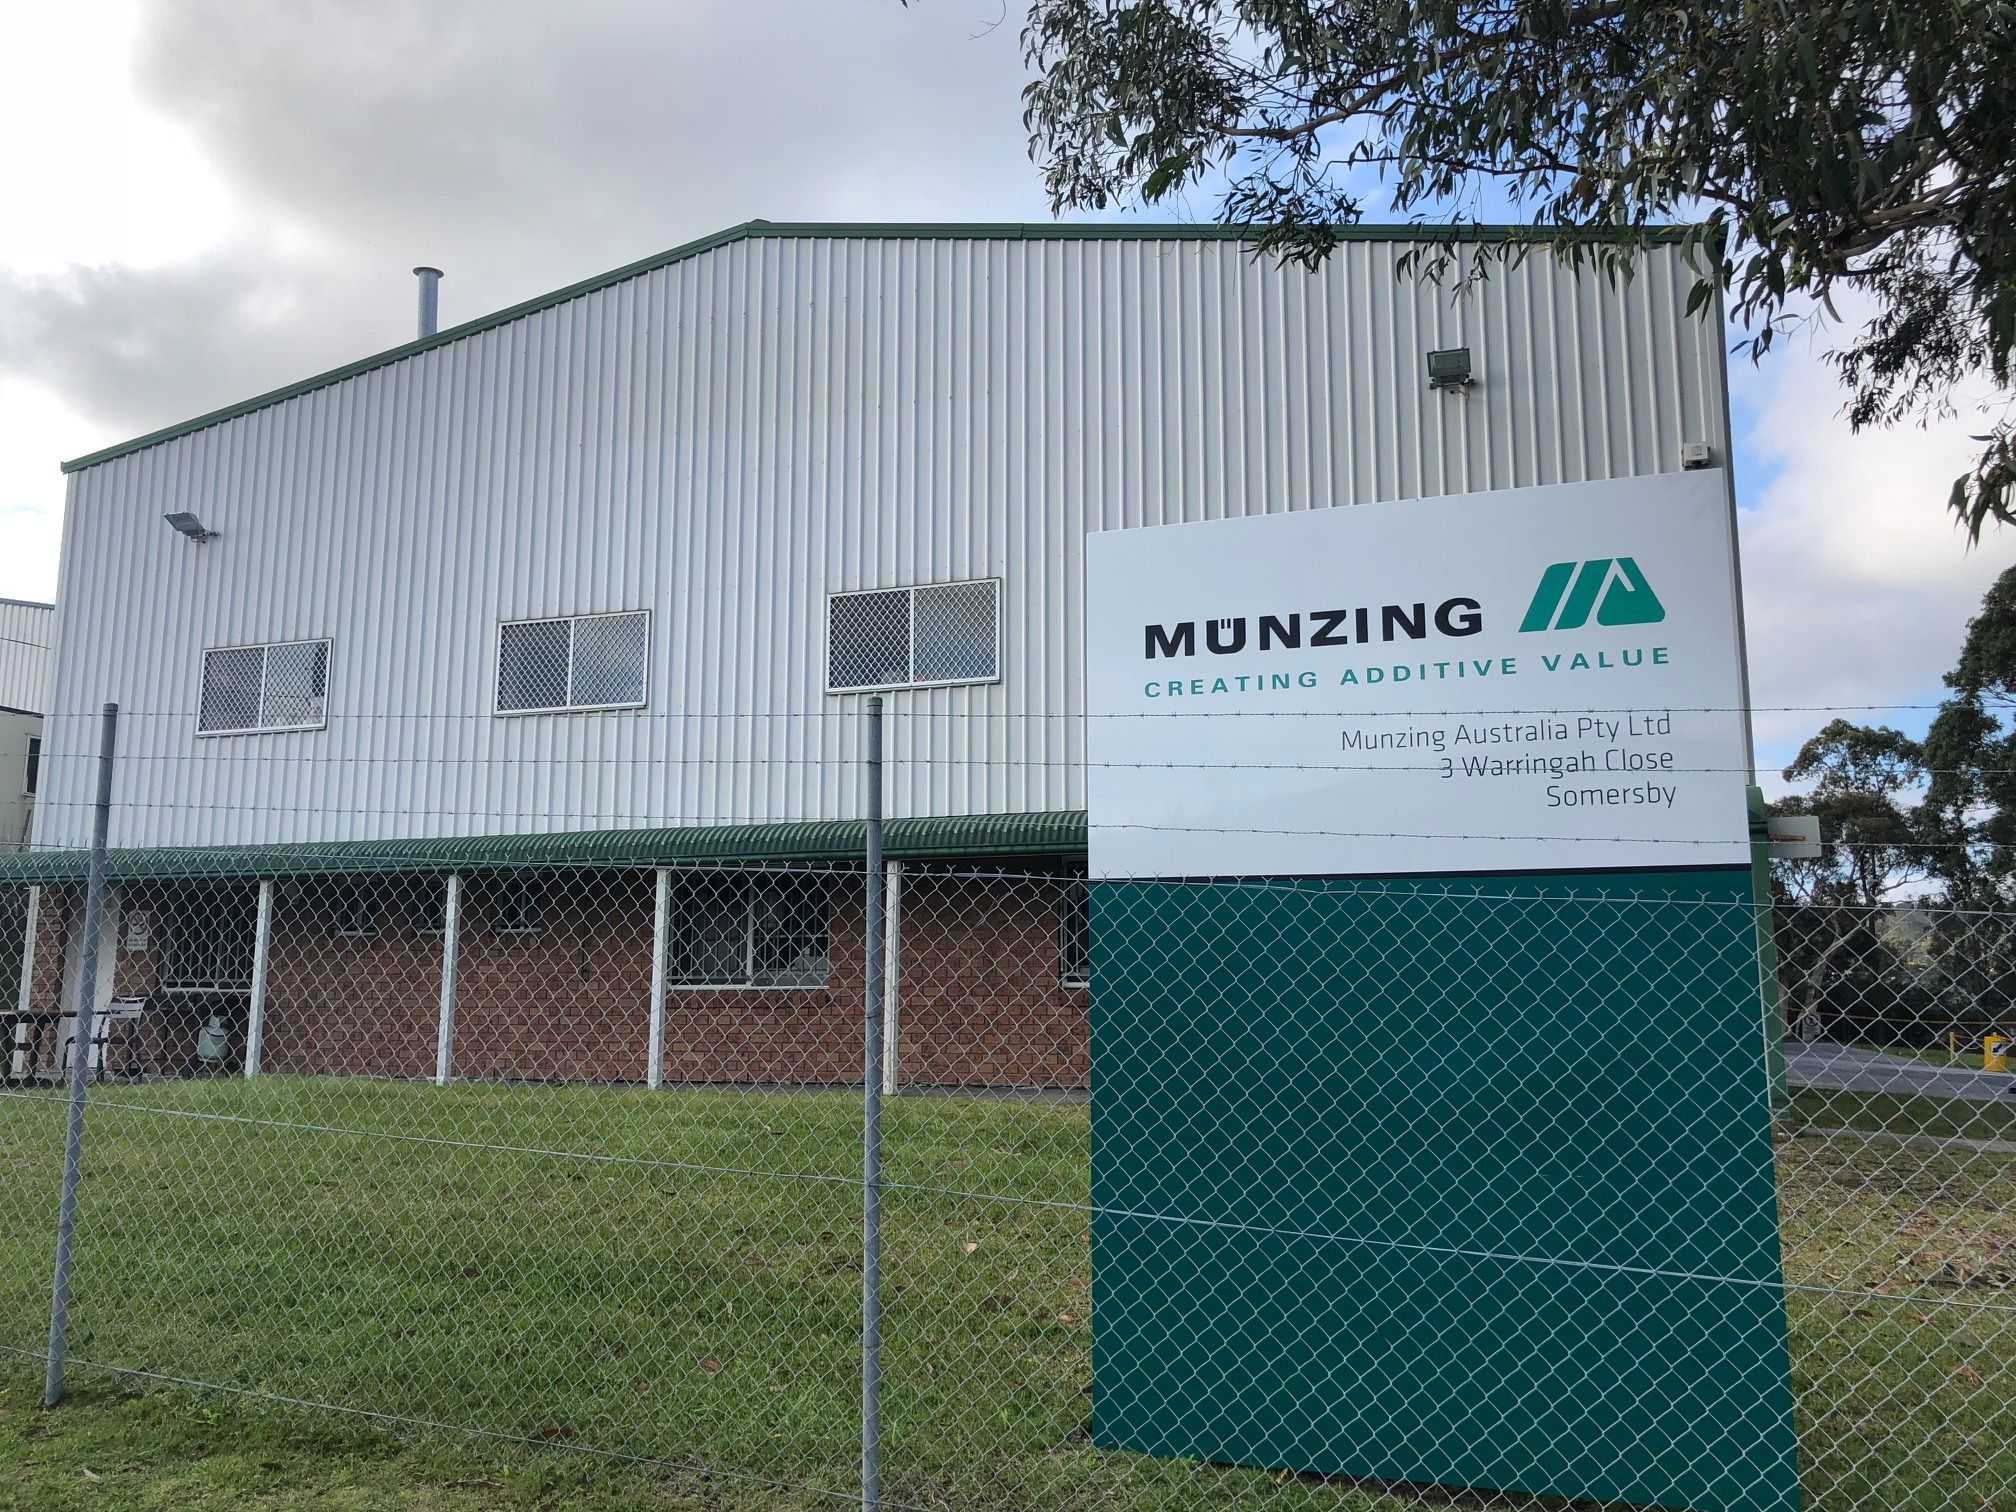 <p>MÜNZING Australia Pty. Ltd. befindet sich in Somersby, New South Wales, eine Stunde nördlich von Sydney. Das Fabrikgelände wurde 1993 von der Firma FENTAK® gebaut, die 2018 von MÜNZING übernommen wurde, und ist heute ein Kompetenzzentrum für Herstellung, Forschung und Entwicklung, Verkauf, Lagerung und Vertrieb. Die 1500 Quadratmeter große Anlage befindet sich auf einem halben Hektar australischem Buschland, wo sich auch gelegentlich Kängurus tummeln. Der Standort verfügt über eine Solarfarm, die mehr als 100 % des Stroms liefert, der tagsüber für alle Aktivitäten, einschließlich der Produktion, benötigt wird. Der überschüssige Strom wird in das Stromnetz eingespeist.</p><p>Am Standort wird die gesamte Palette der FENTAK®-Produkte für den Geschäftsbereich FPA hergestellt. Dazu gehören Katalysatoren und Härter, Trennmittel, Netzmittel, Pigmentdispersionen, Wachsemulsionen, Spachtelmassen, Beschichtungen und Dichtstoffe sowie viele Spezialprodukte. Zu den F&amp;E-Einrichtungen gehören Spezialgeräte wie eine Laborpresse zur Herstellung von Spanplatten, mitteldichten Faserplatten und Sperrholz im Pilotmaßstab. Außerdem gibt es eine Papierbehandlungsanlage im Labormaßstab zur Herstellung von Niederdruck- und Hochdrucklaminaten und Overlays. Das hochqualifizierte und erfahrene technische Personal ist führend auf dem Gebiet der Forschung und Entwicklung von Holzplatten und Laminaten und kann seine Kunden in einer Vielzahl von Fragen technisch unterstützen.</p>